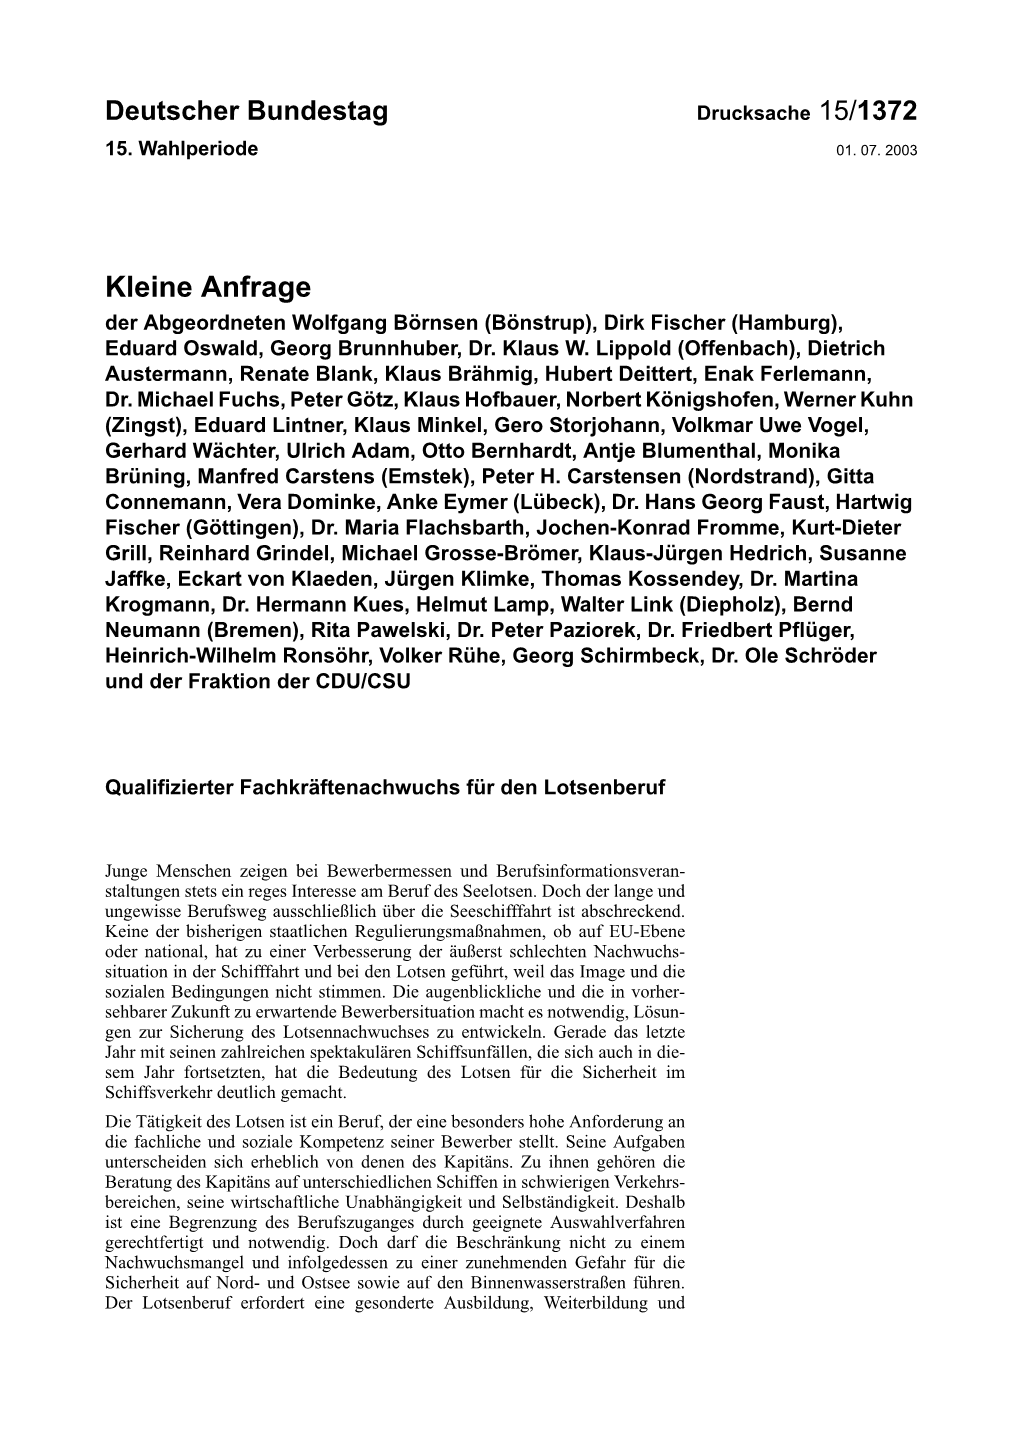 Kleine Anfrage Der Abgeordneten Wolfgang Börnsen (Bönstrup), Dirk Fischer (Hamburg), Eduard Oswald, Georg Brunnhuber, Dr